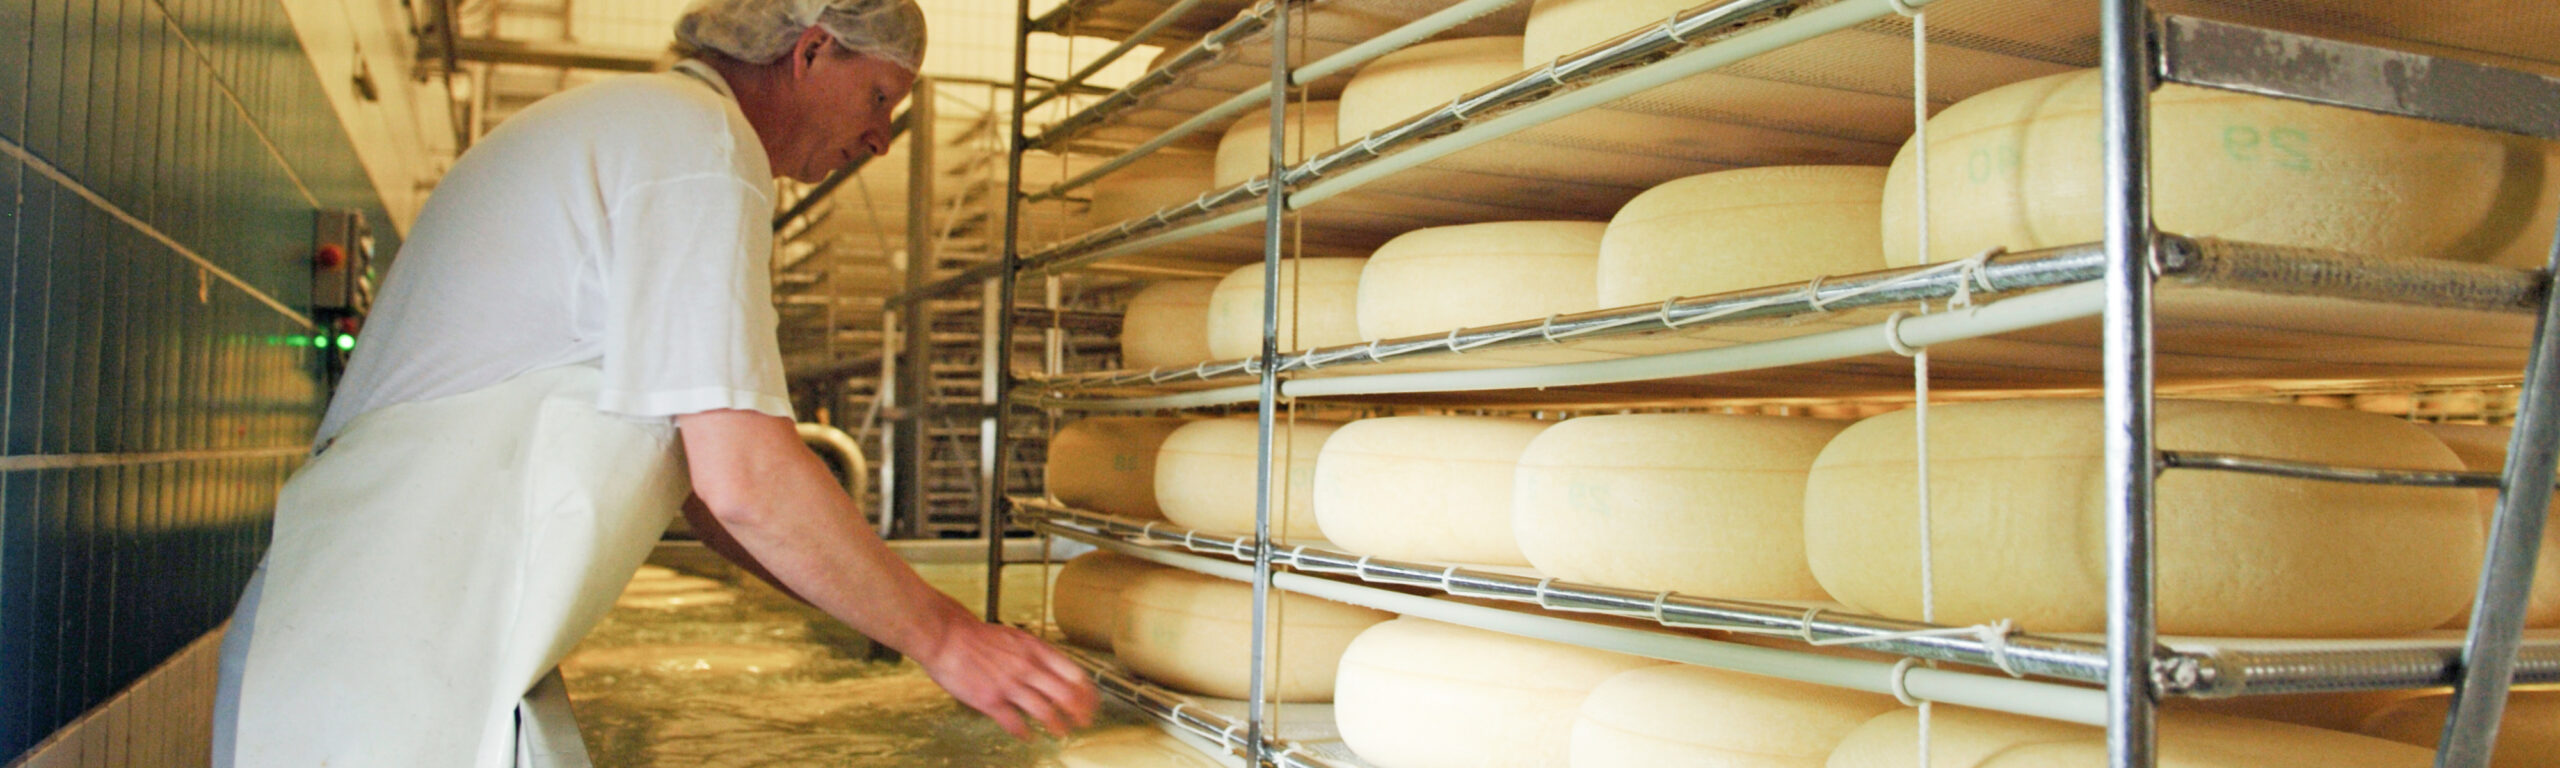 Kaas maken in de zuivelfabriek